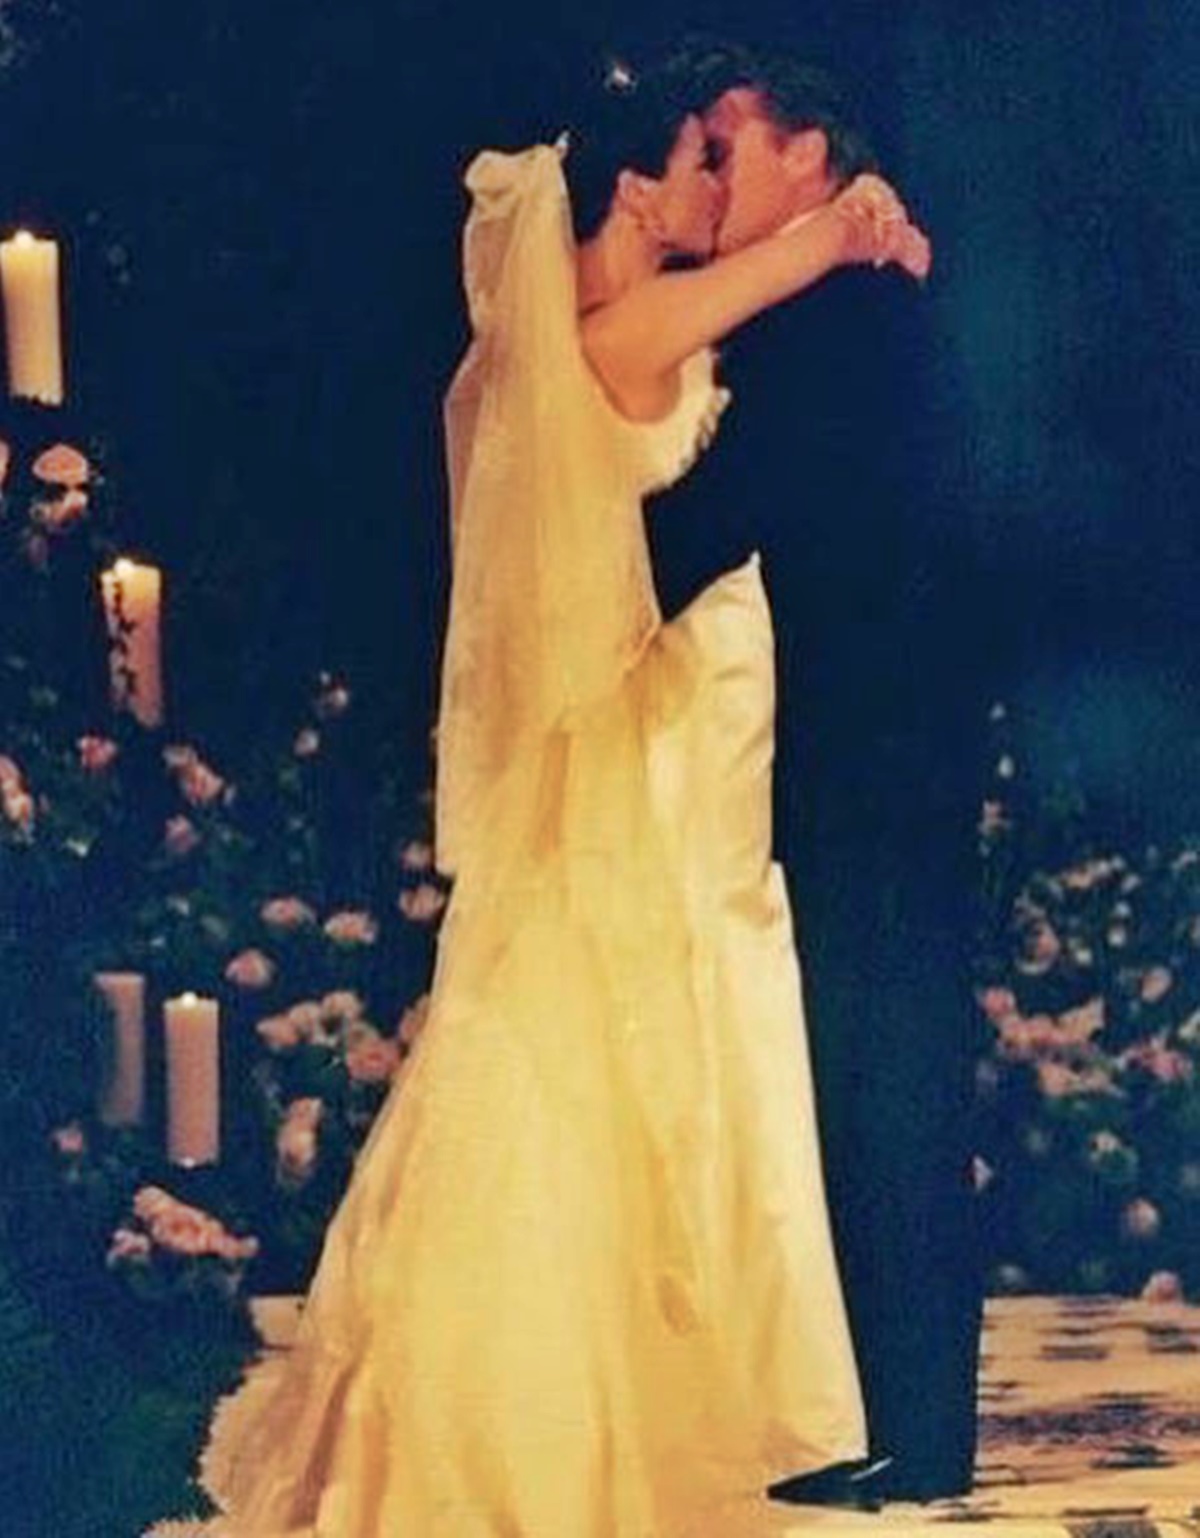 Elképesztően szép menyasszony volt Catherine Zeta-Jones - Már 23 éve, hogy összeházasodott Michael Douglas-szel